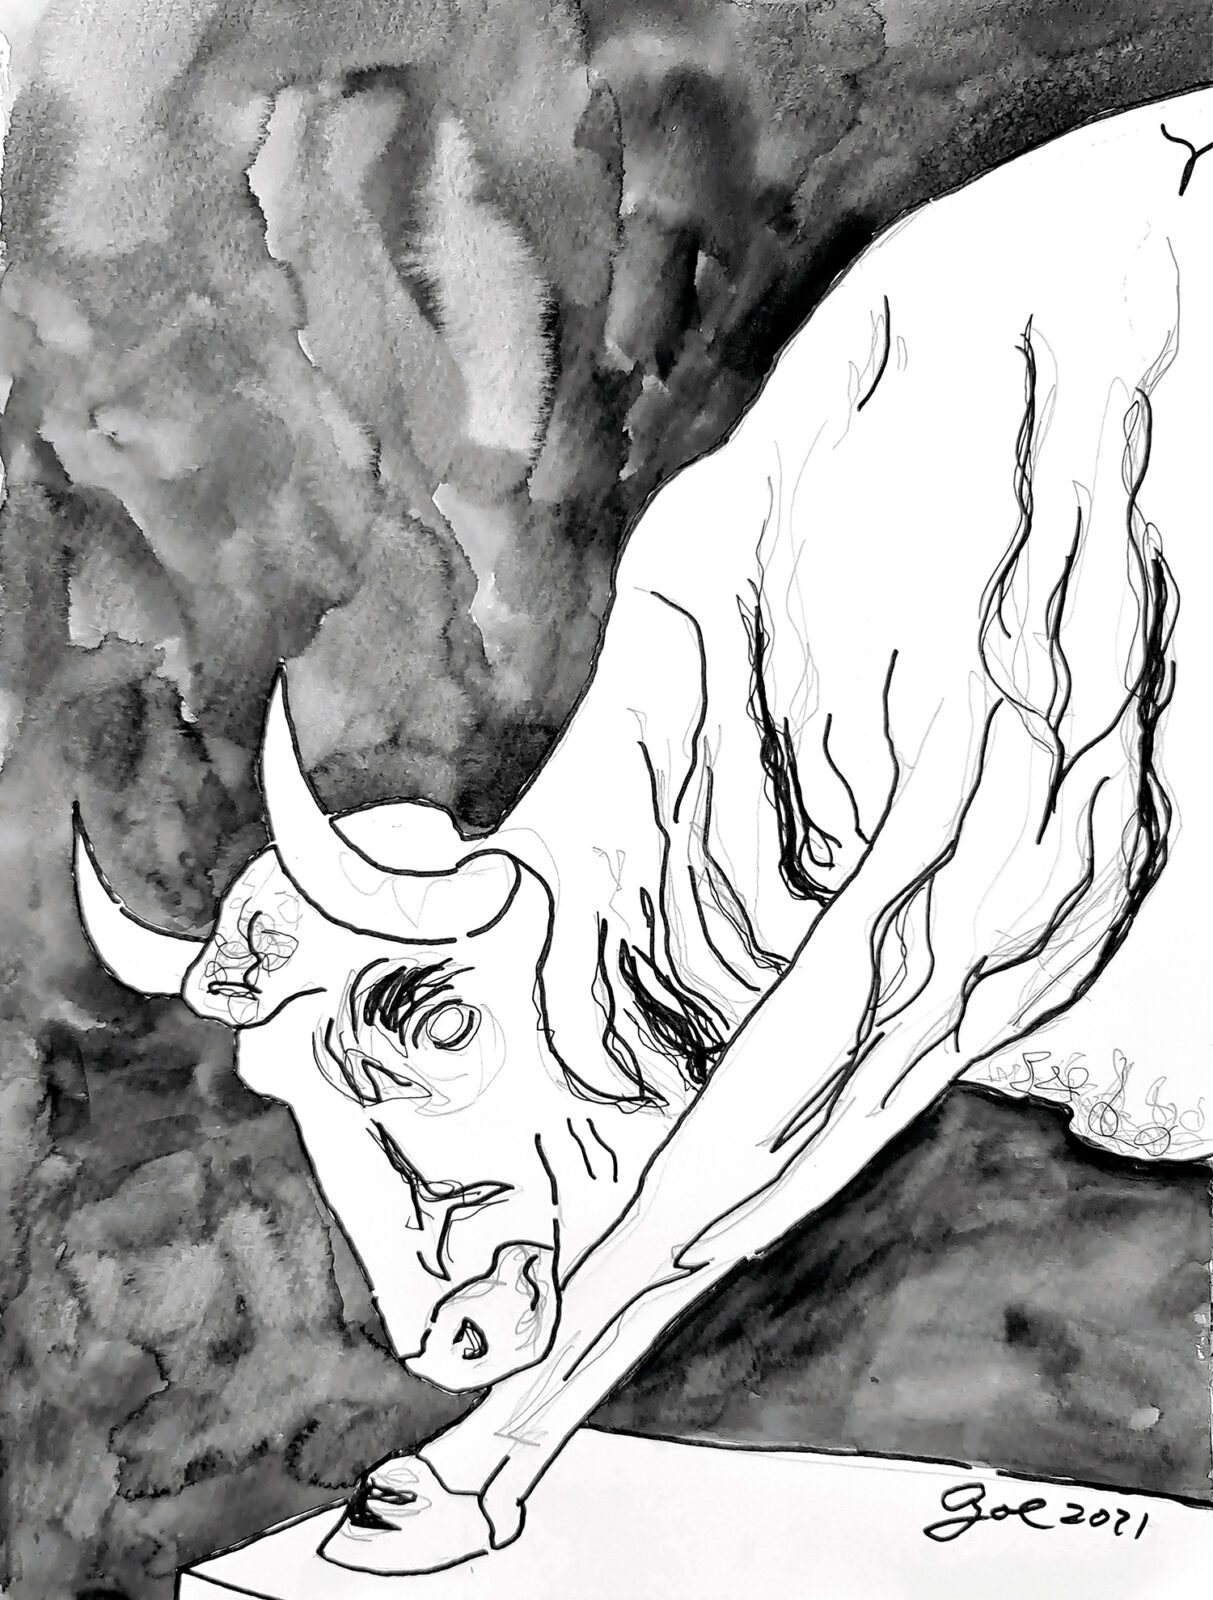 Zeichnung: Der weiße Stier vom Humboldthain